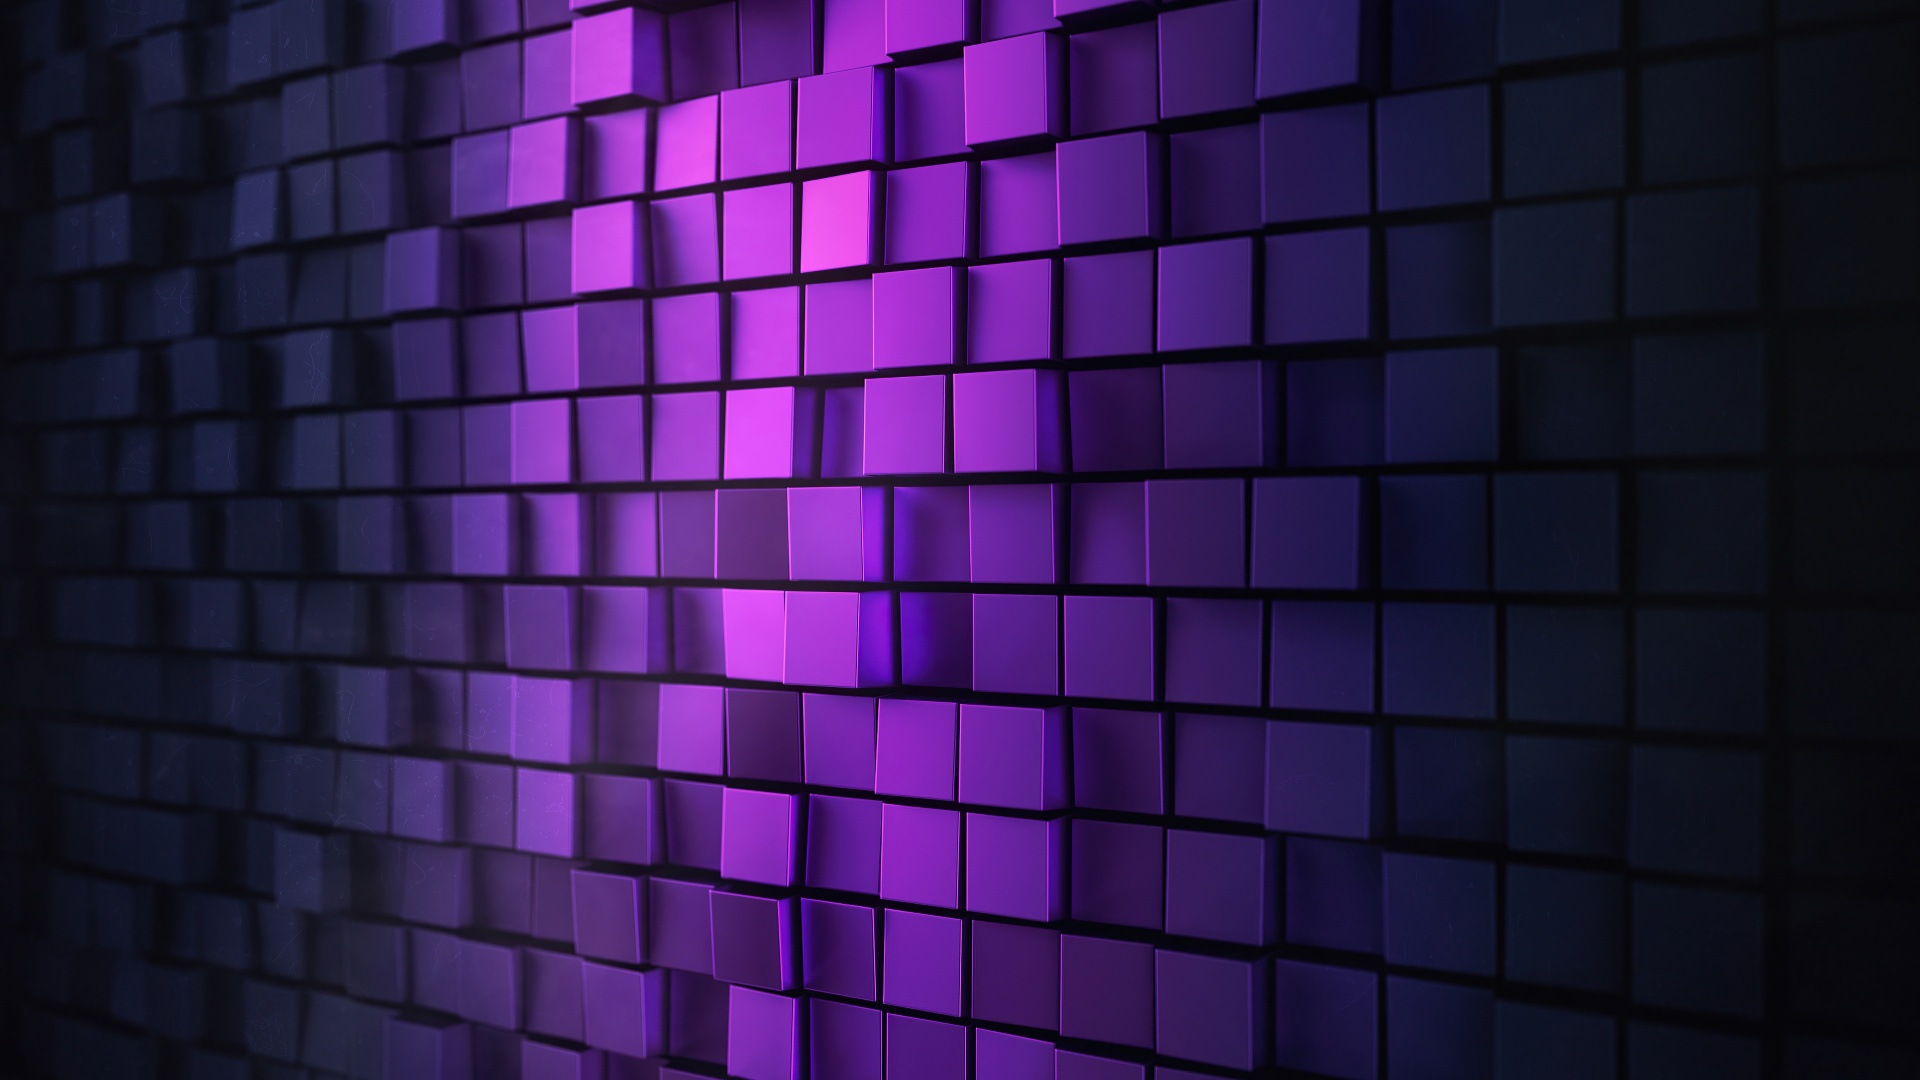 Hình nền 3D background Wallpaper 4K kết hợp giữa màu tím huyền bí, ánh sáng tối giản và các hình vuông cắt cạnh tạo nên một chiếc ảnh nền tuyệt vời và độc đáo. Với độ phân giải cao, bạn đảm bảo sẽ được tận hưởng những chi tiết tinh tế nhất của bức ảnh. Hãy cùng khám phá bức hình nền 3D Wallpaper này để thực sự trải nghiệm ngay!